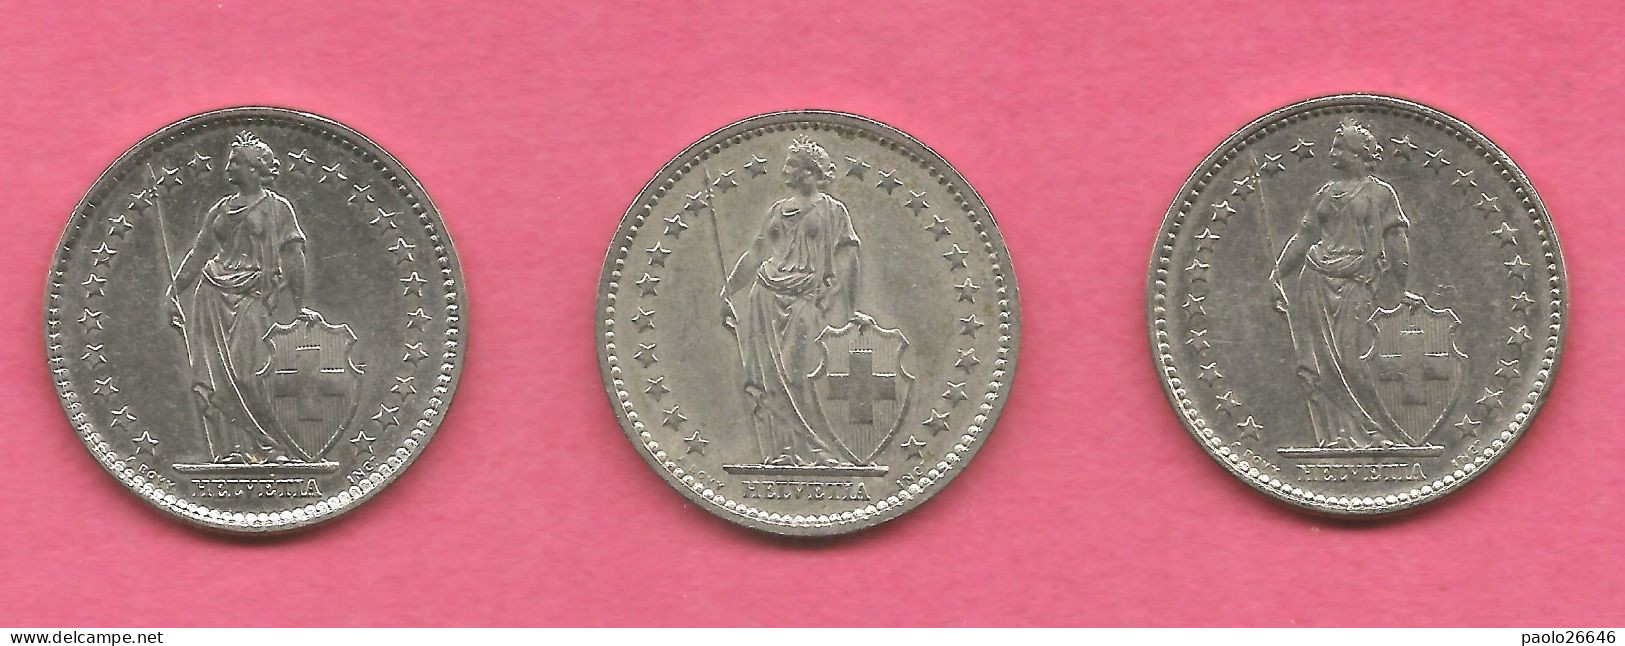 3 Monete Svizzera Da 2 Fr 1972-1974-1978  QFDC - 2 Franken